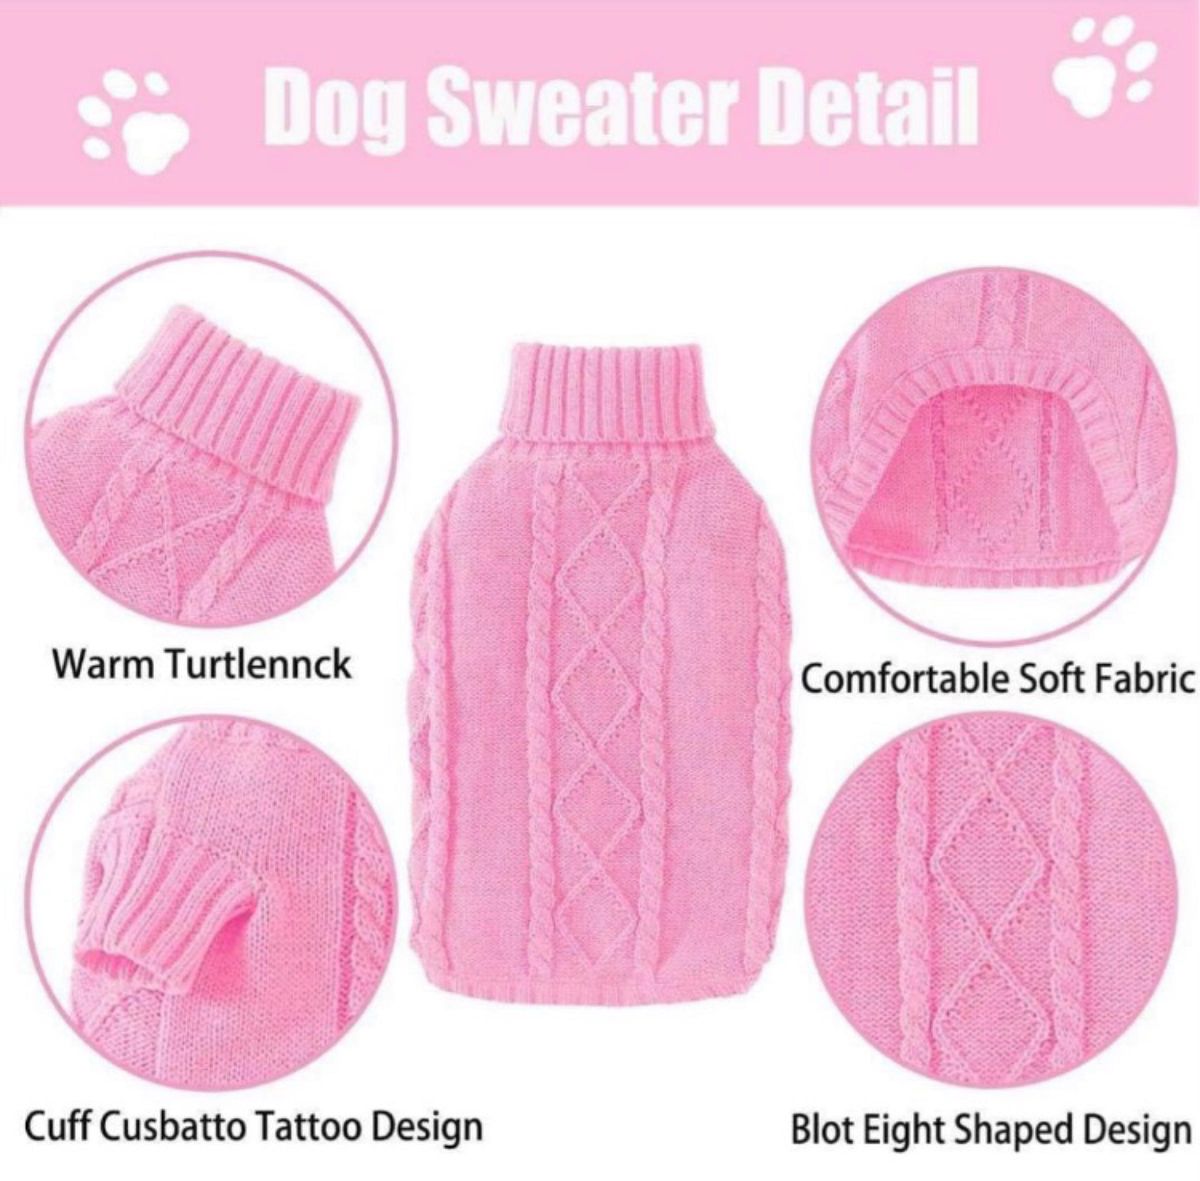 犬用セーター 犬服 コスチューム セーター 洋服 ドッグウェア 防寒着 ピンク